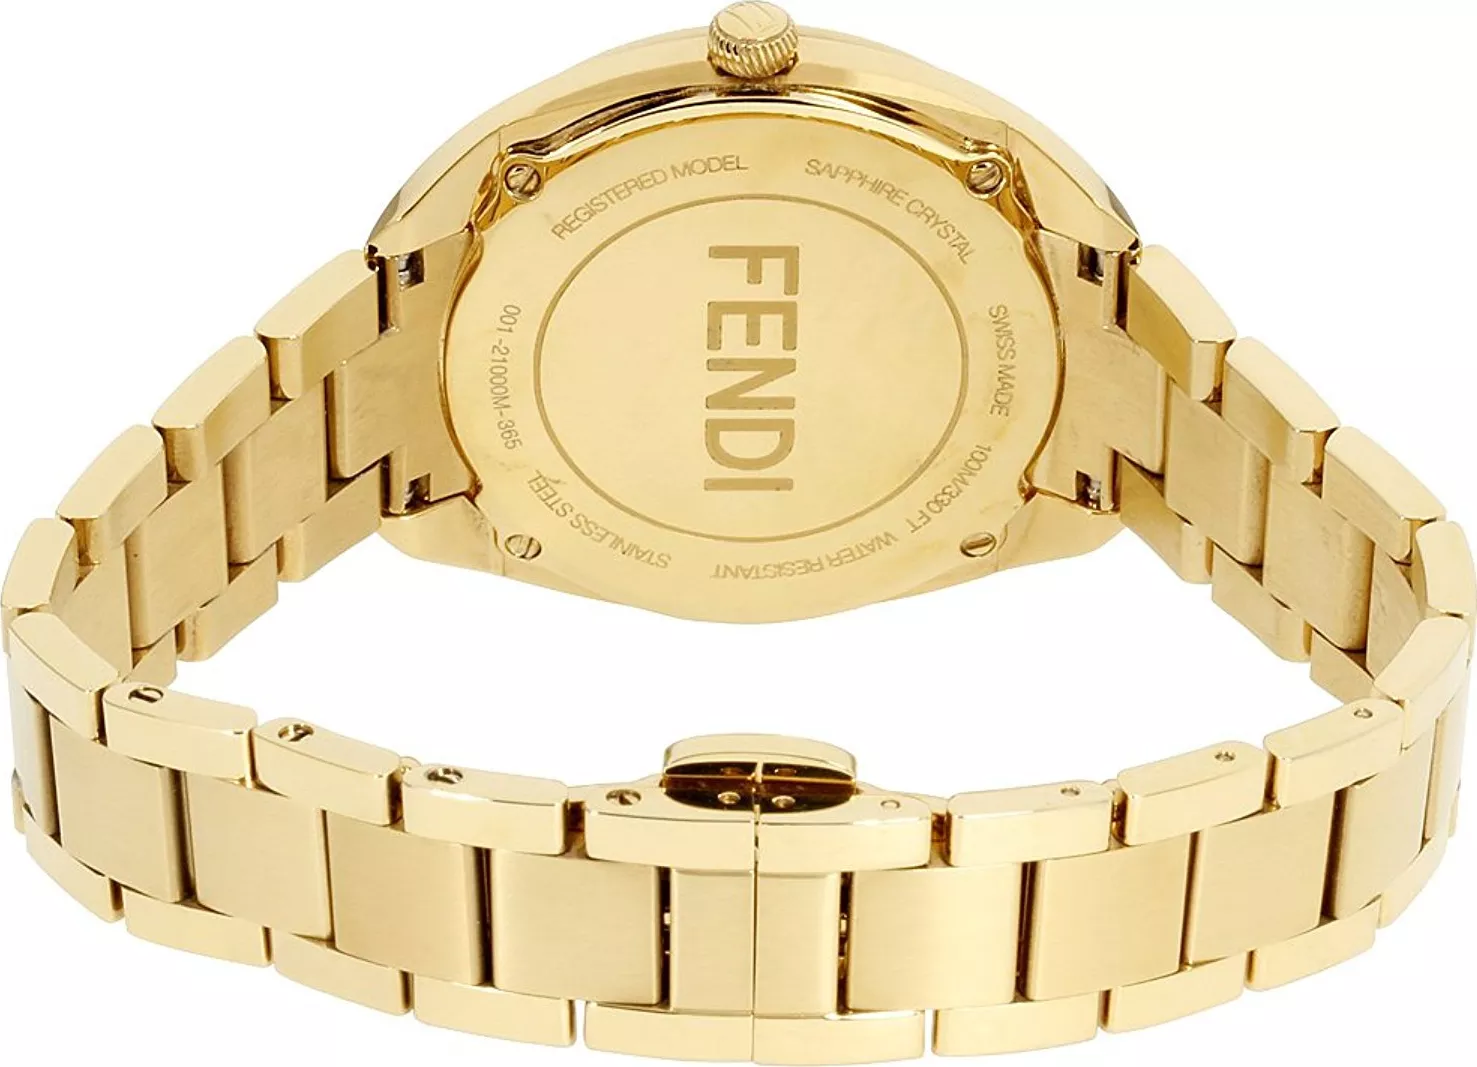 Fendi F211431000XG Black Dial Bracelet Watch 34MM